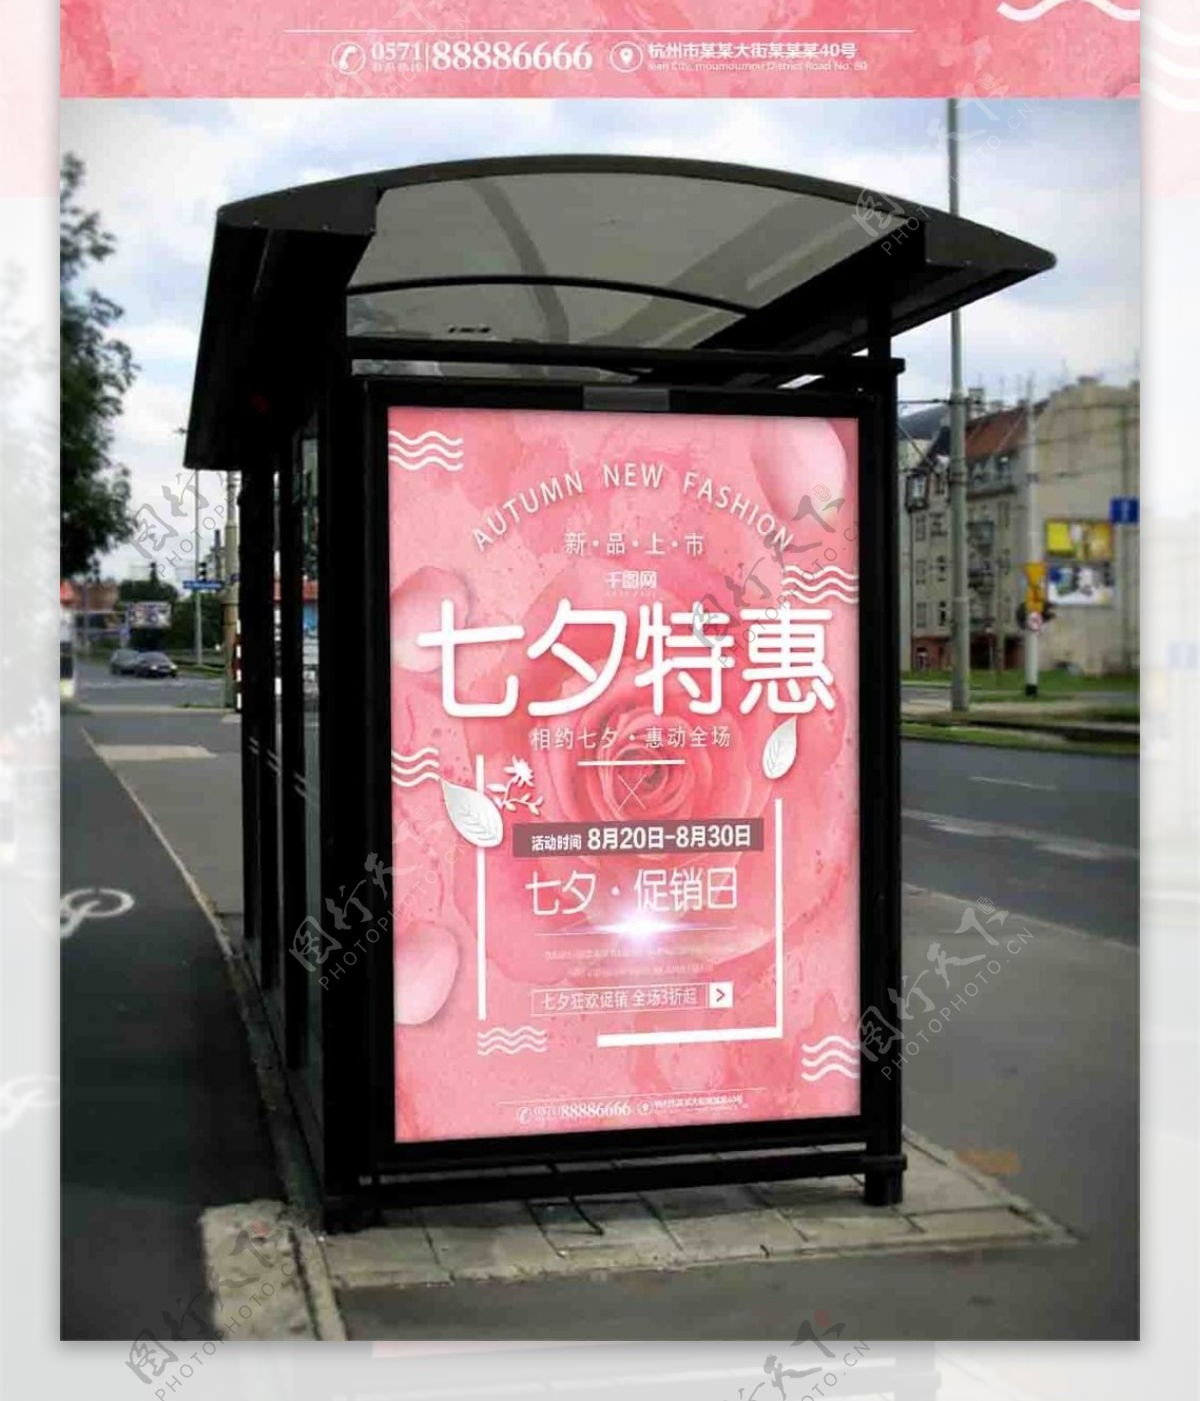 粉色七夕宣传海报唯美情人节促销海报